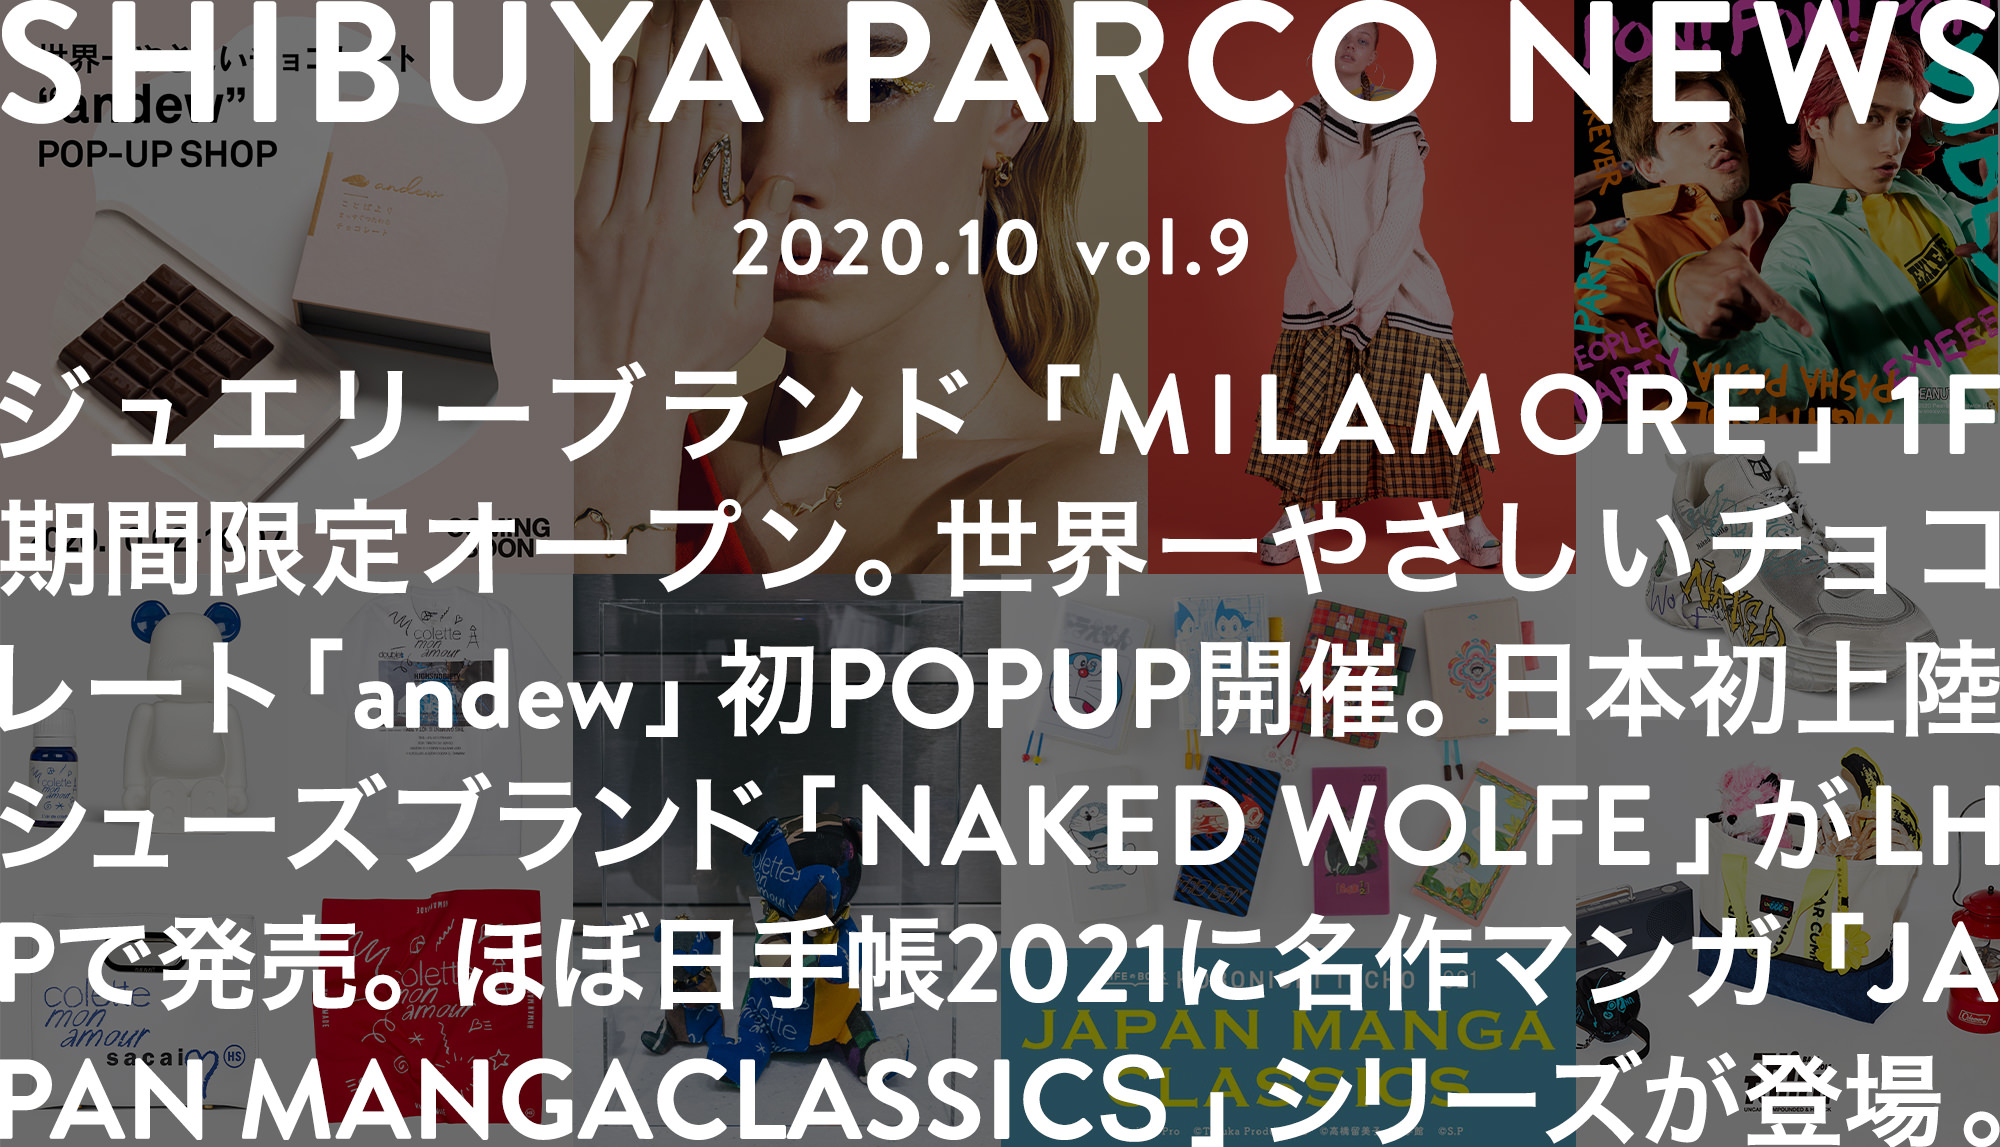 SHIBUYA PARCO NEWS ―2020.10― vol.9